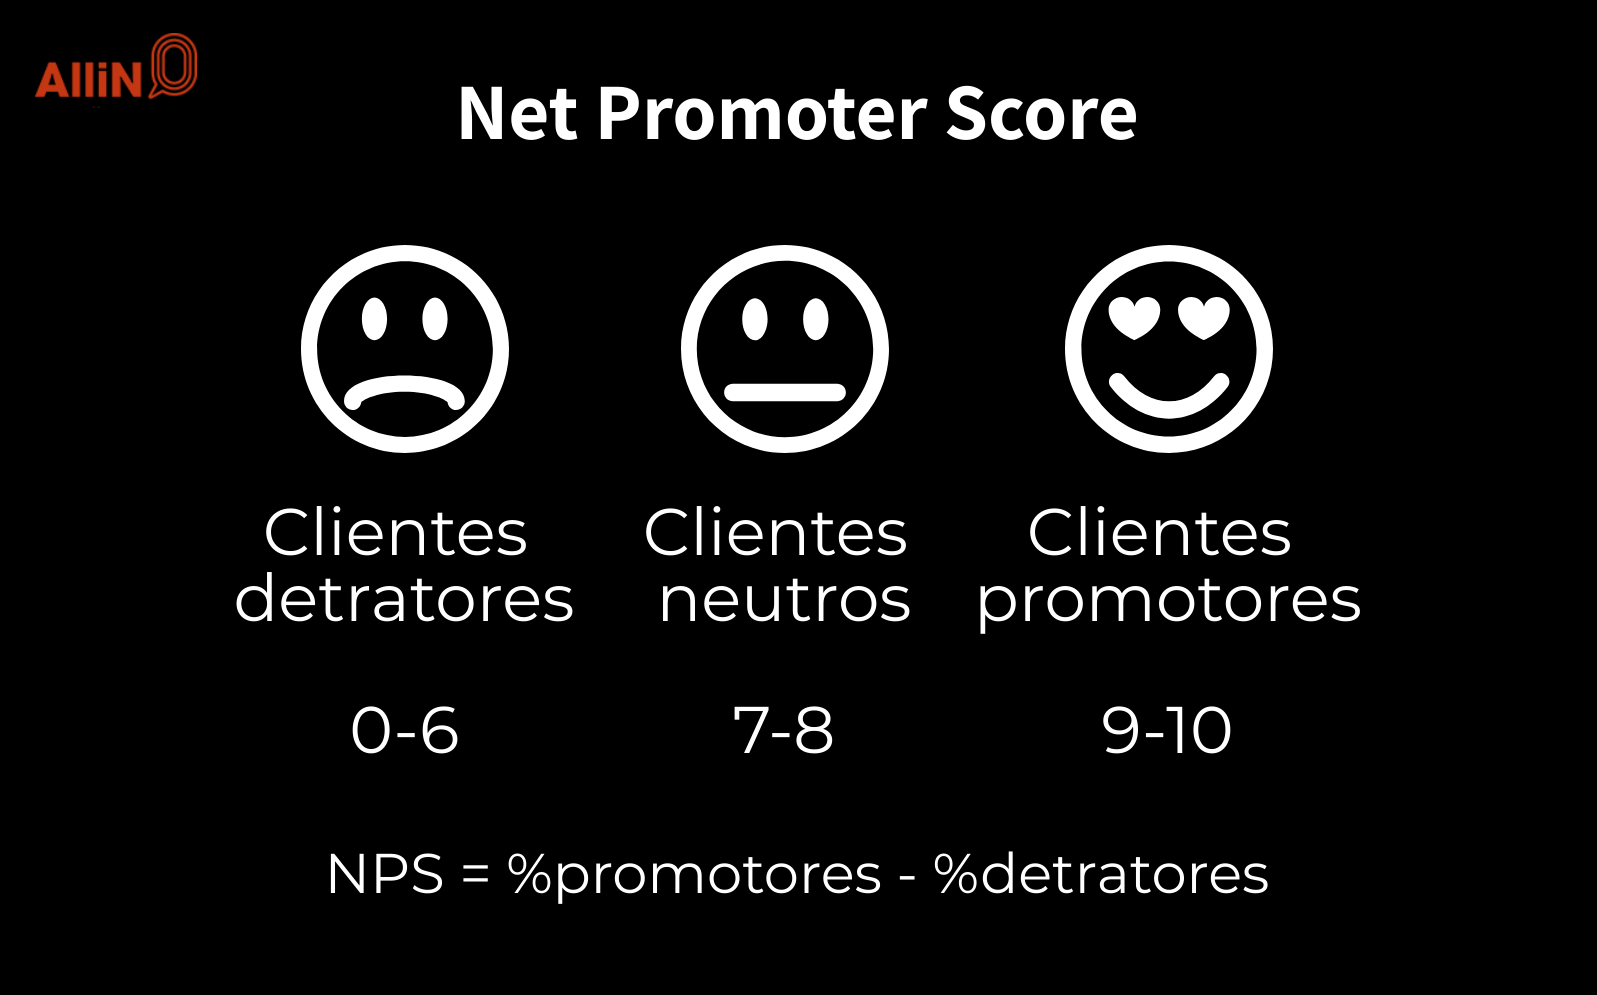 A imagem apresenta os três fatores do NPS (Net Promoter Score): 1. os clientes detratores; 2. clientes neutros; 3. clientes promotores. Em seguida, apresenta o cálculo de NPS: a % de promotores menos a % de detratores.